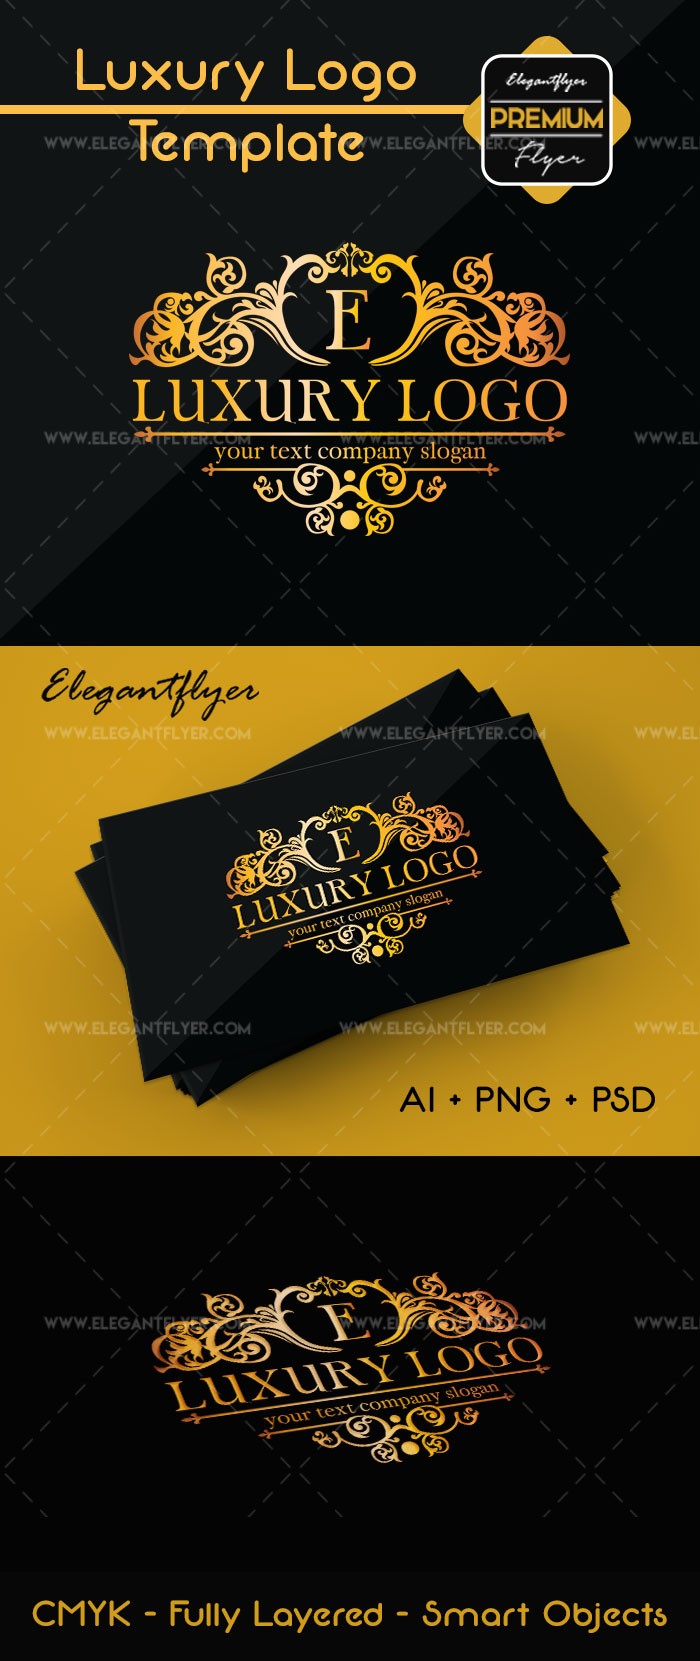 Logo de lujo by ElegantFlyer